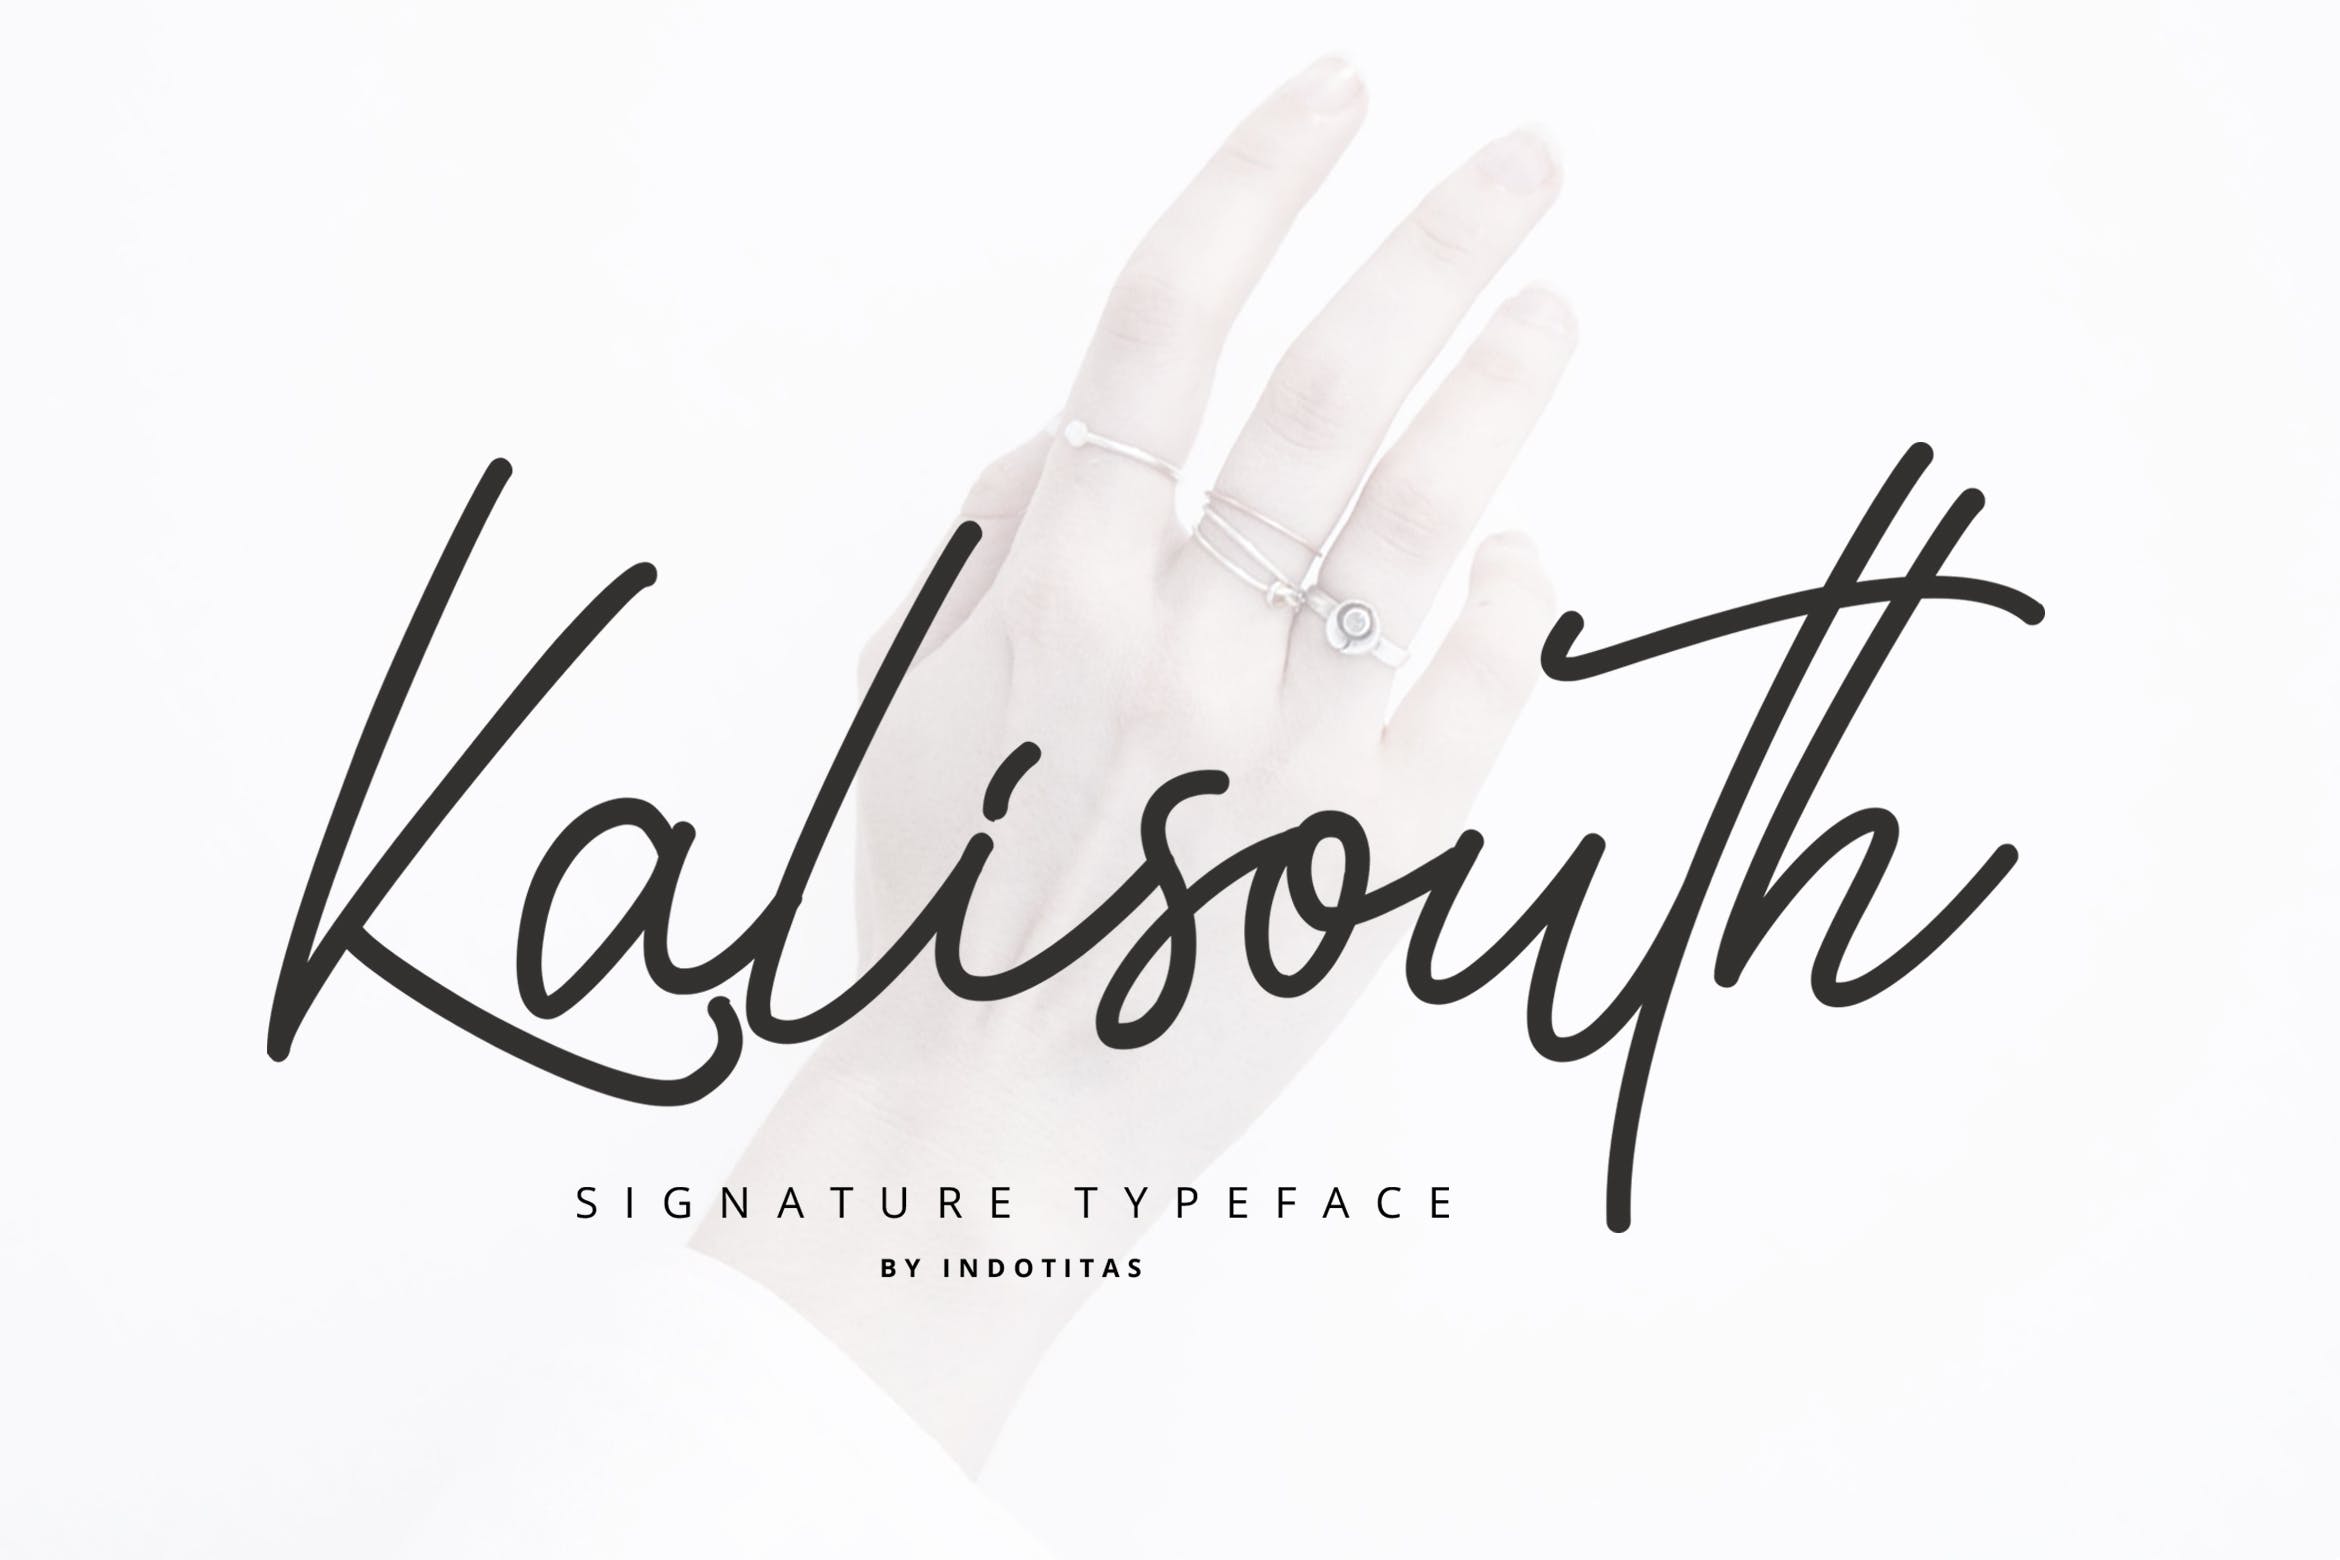 现代钢笔书法英文签名字体下载 Kalisouth Signa